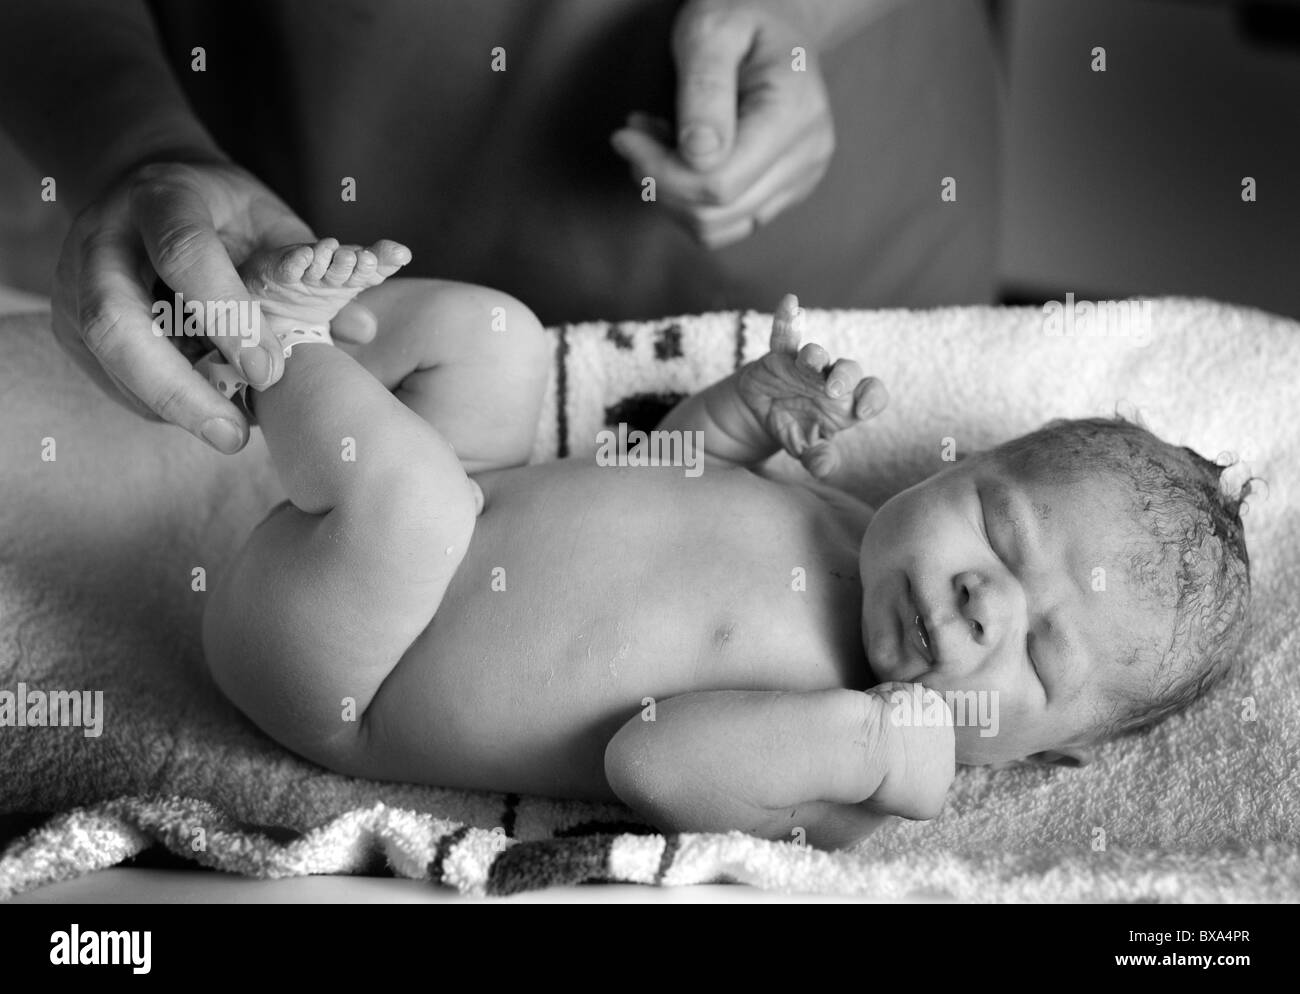 Neues Baby geboren 1 Minute alt von Hebamme geprüft Stockfoto